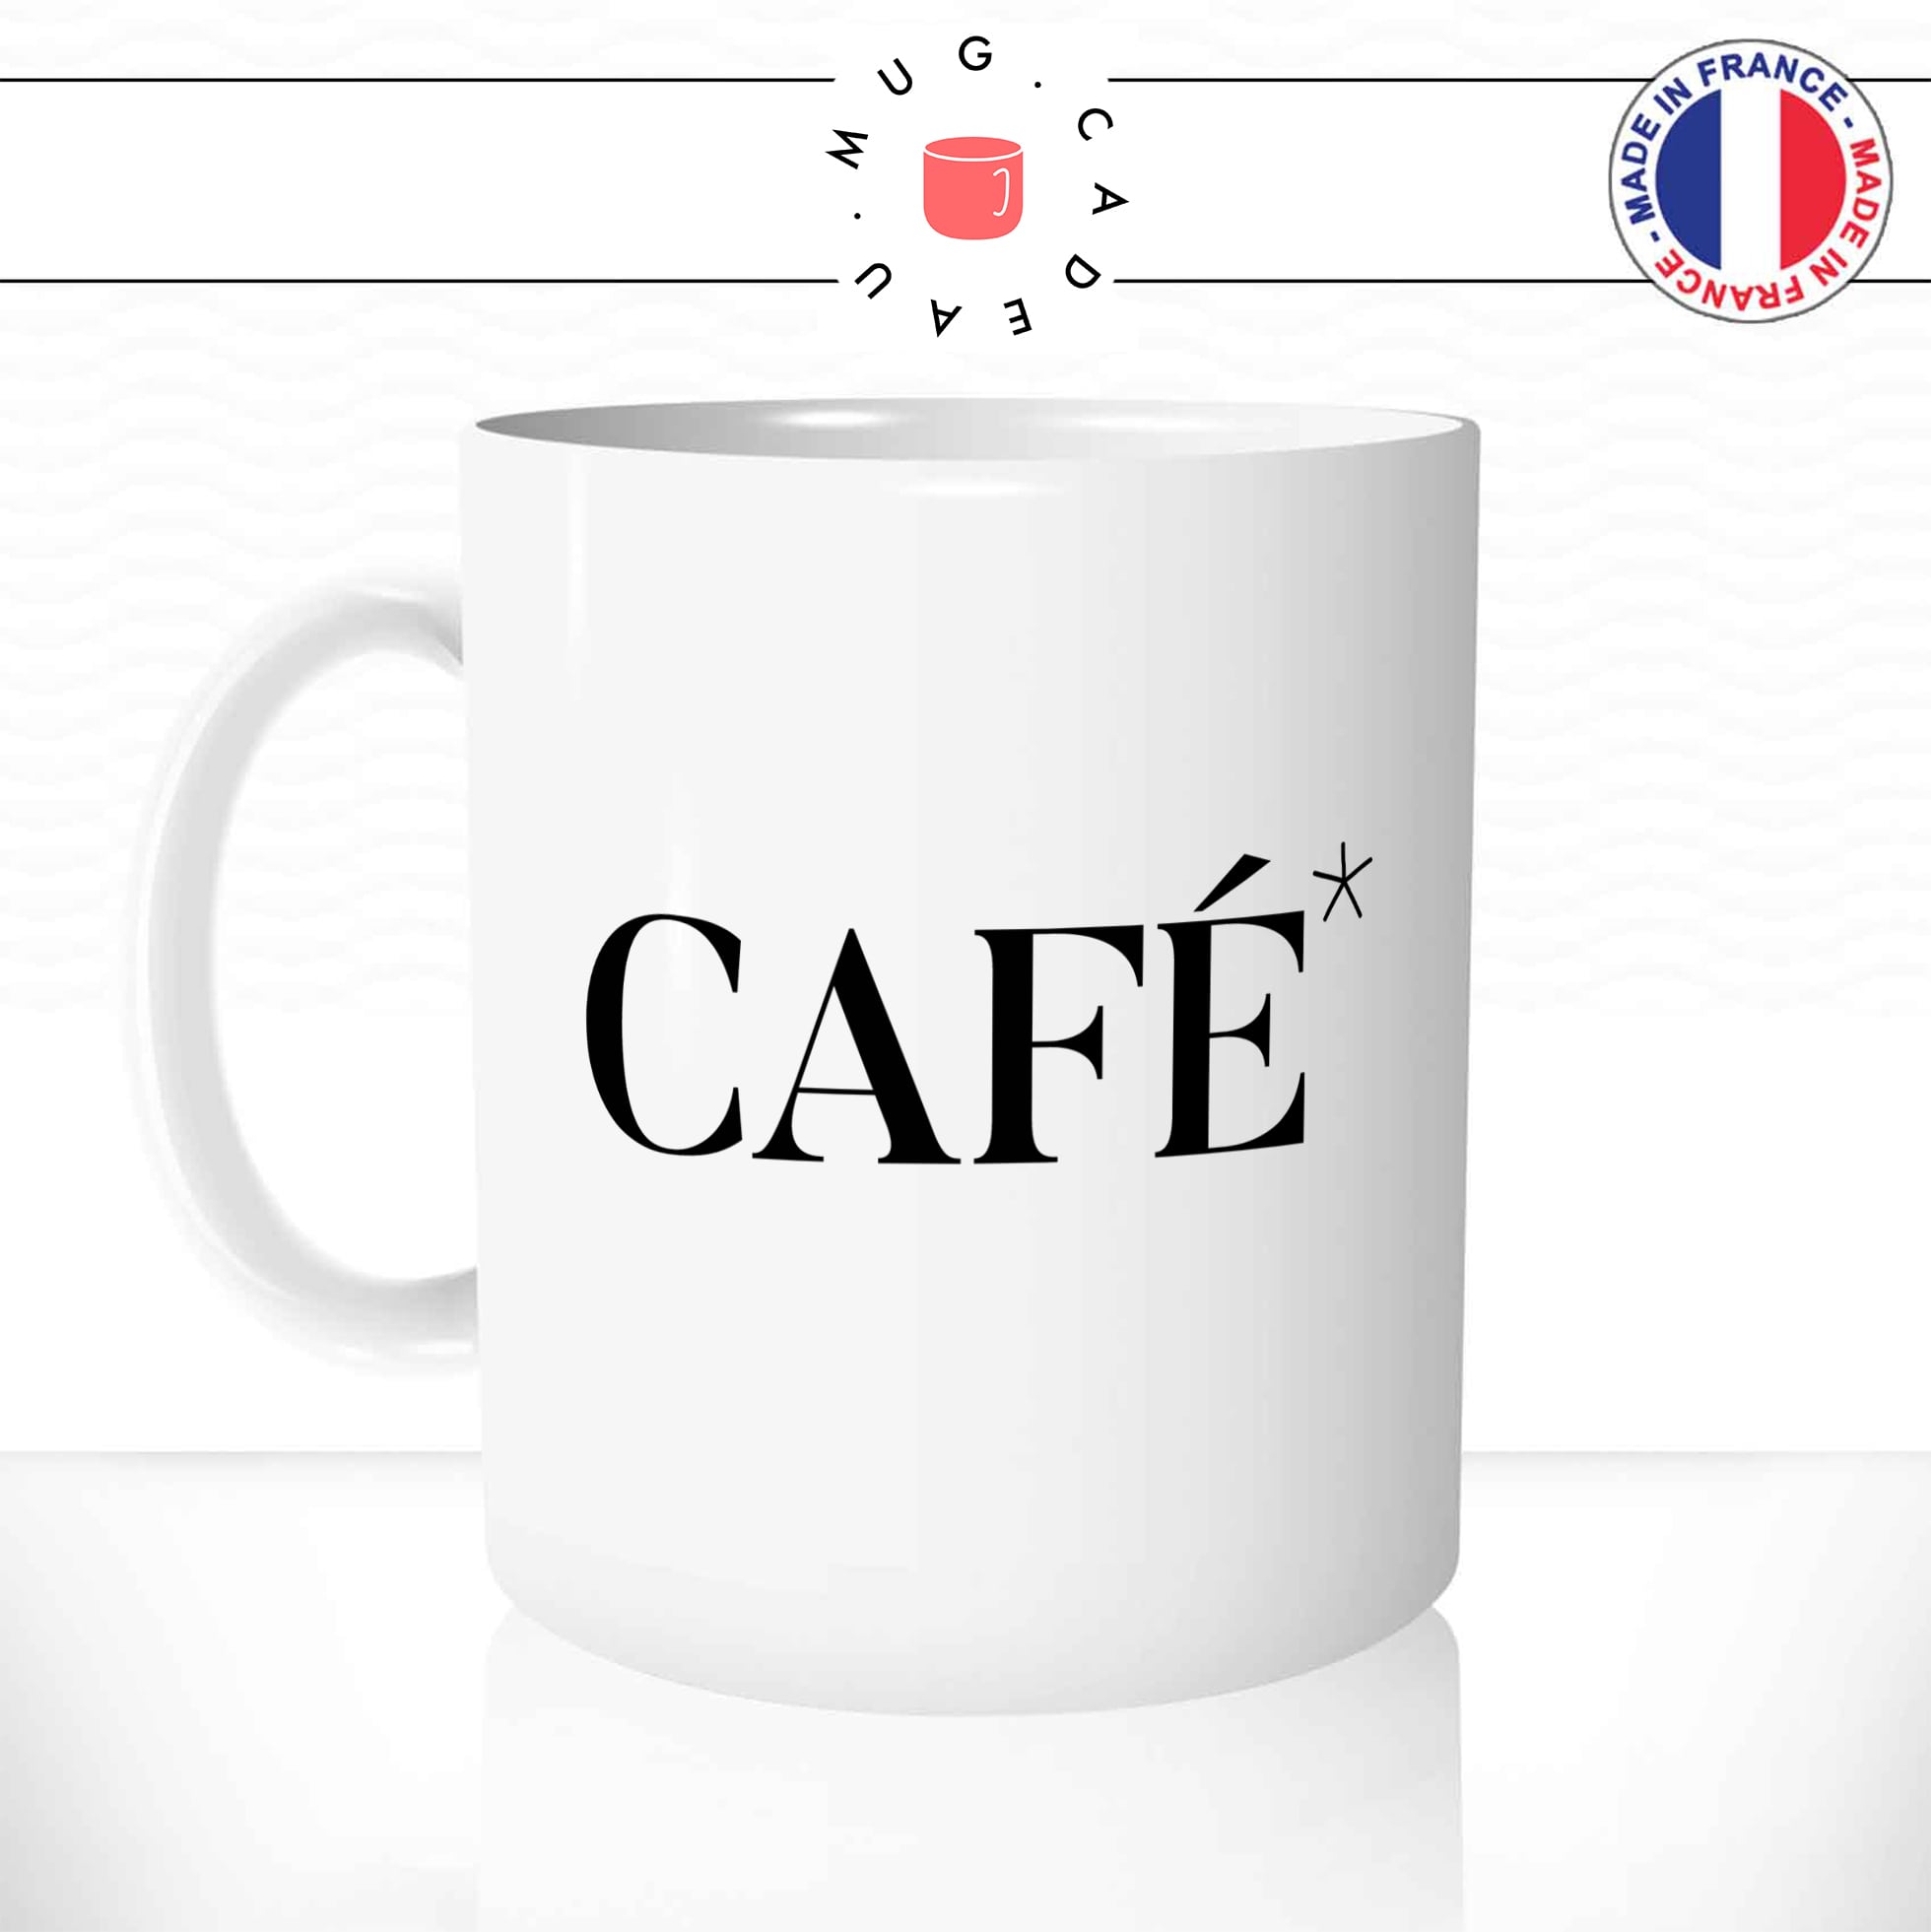 mug-tasse-coffee-caf-rigole-deca-decaf-decafeiné-energie-humour-fun-matin-reveil-café-thé-mugs-tasses-idée-cadeau-original-personnalisée-min